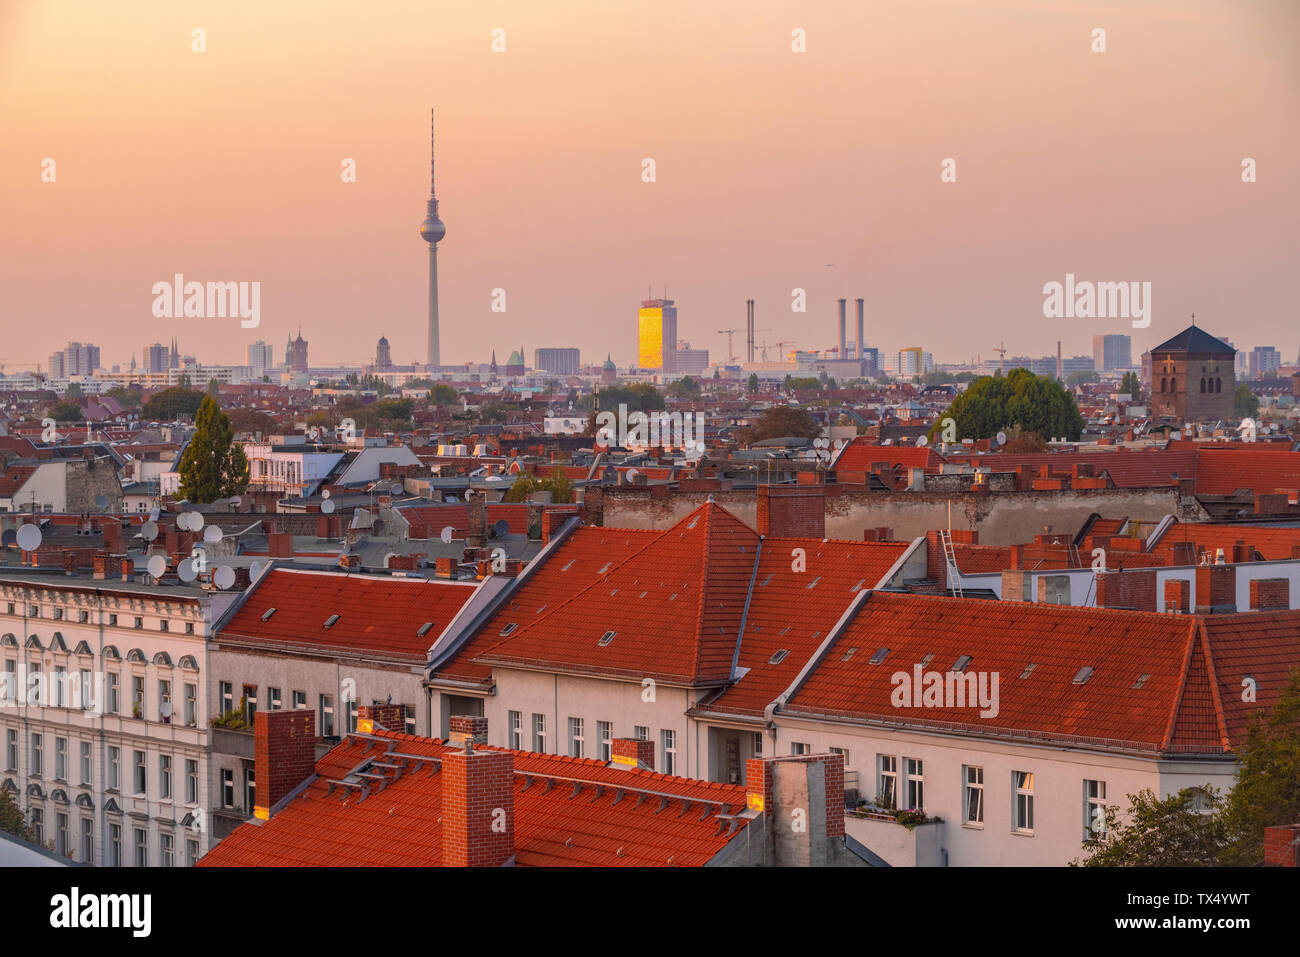 Germany, Berlin, skyline by sunset Stock Photo